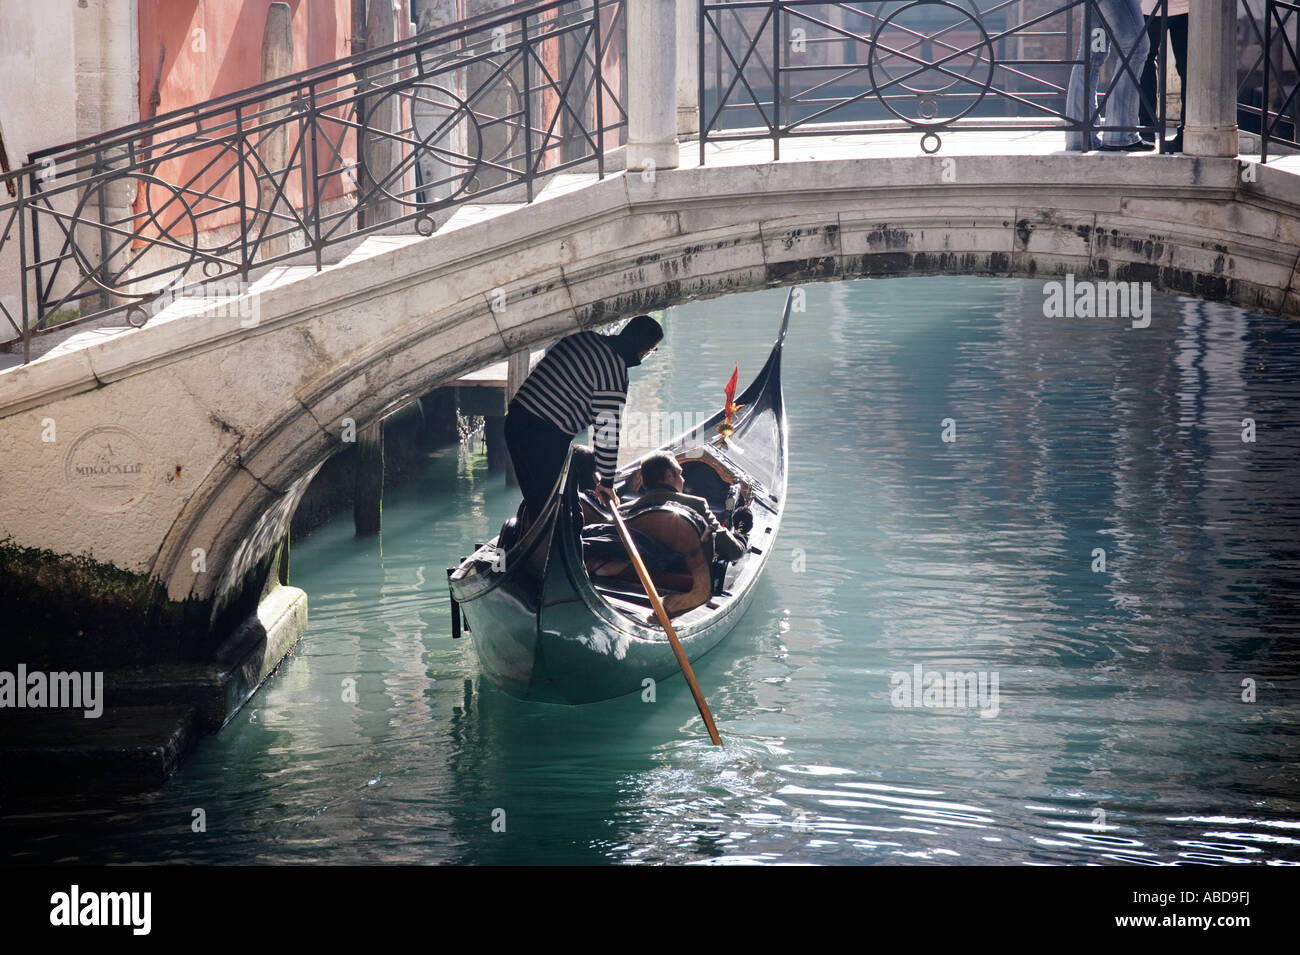 Un gondolier passe sous un pont à Venise Italie Banque D'Images